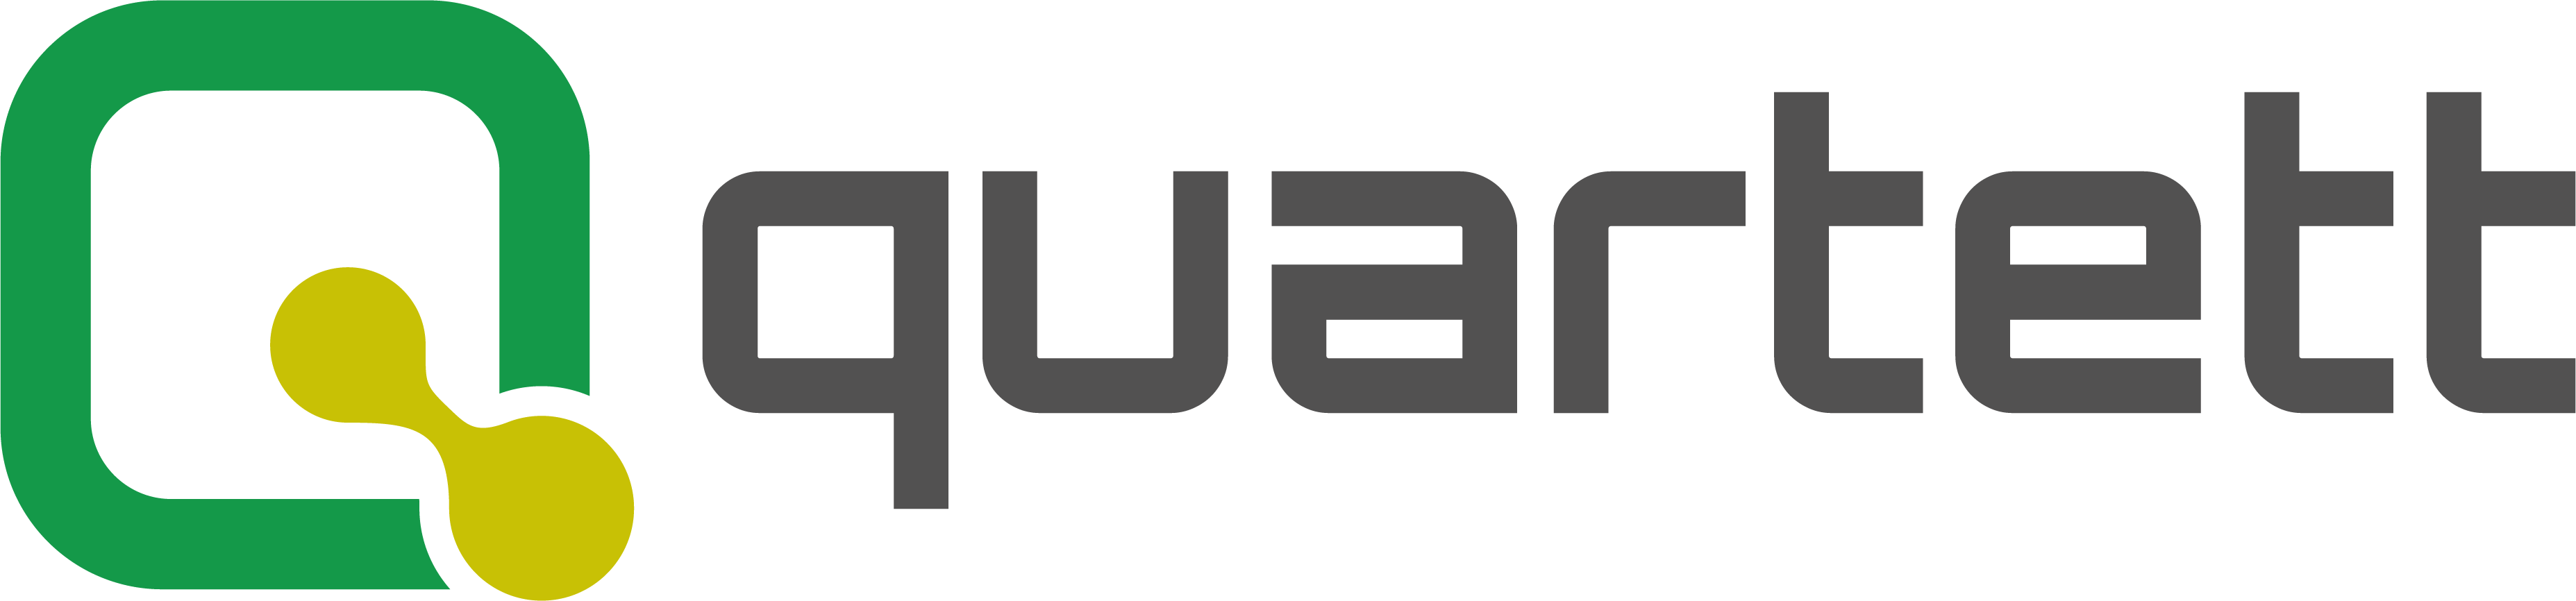 Logo quartett